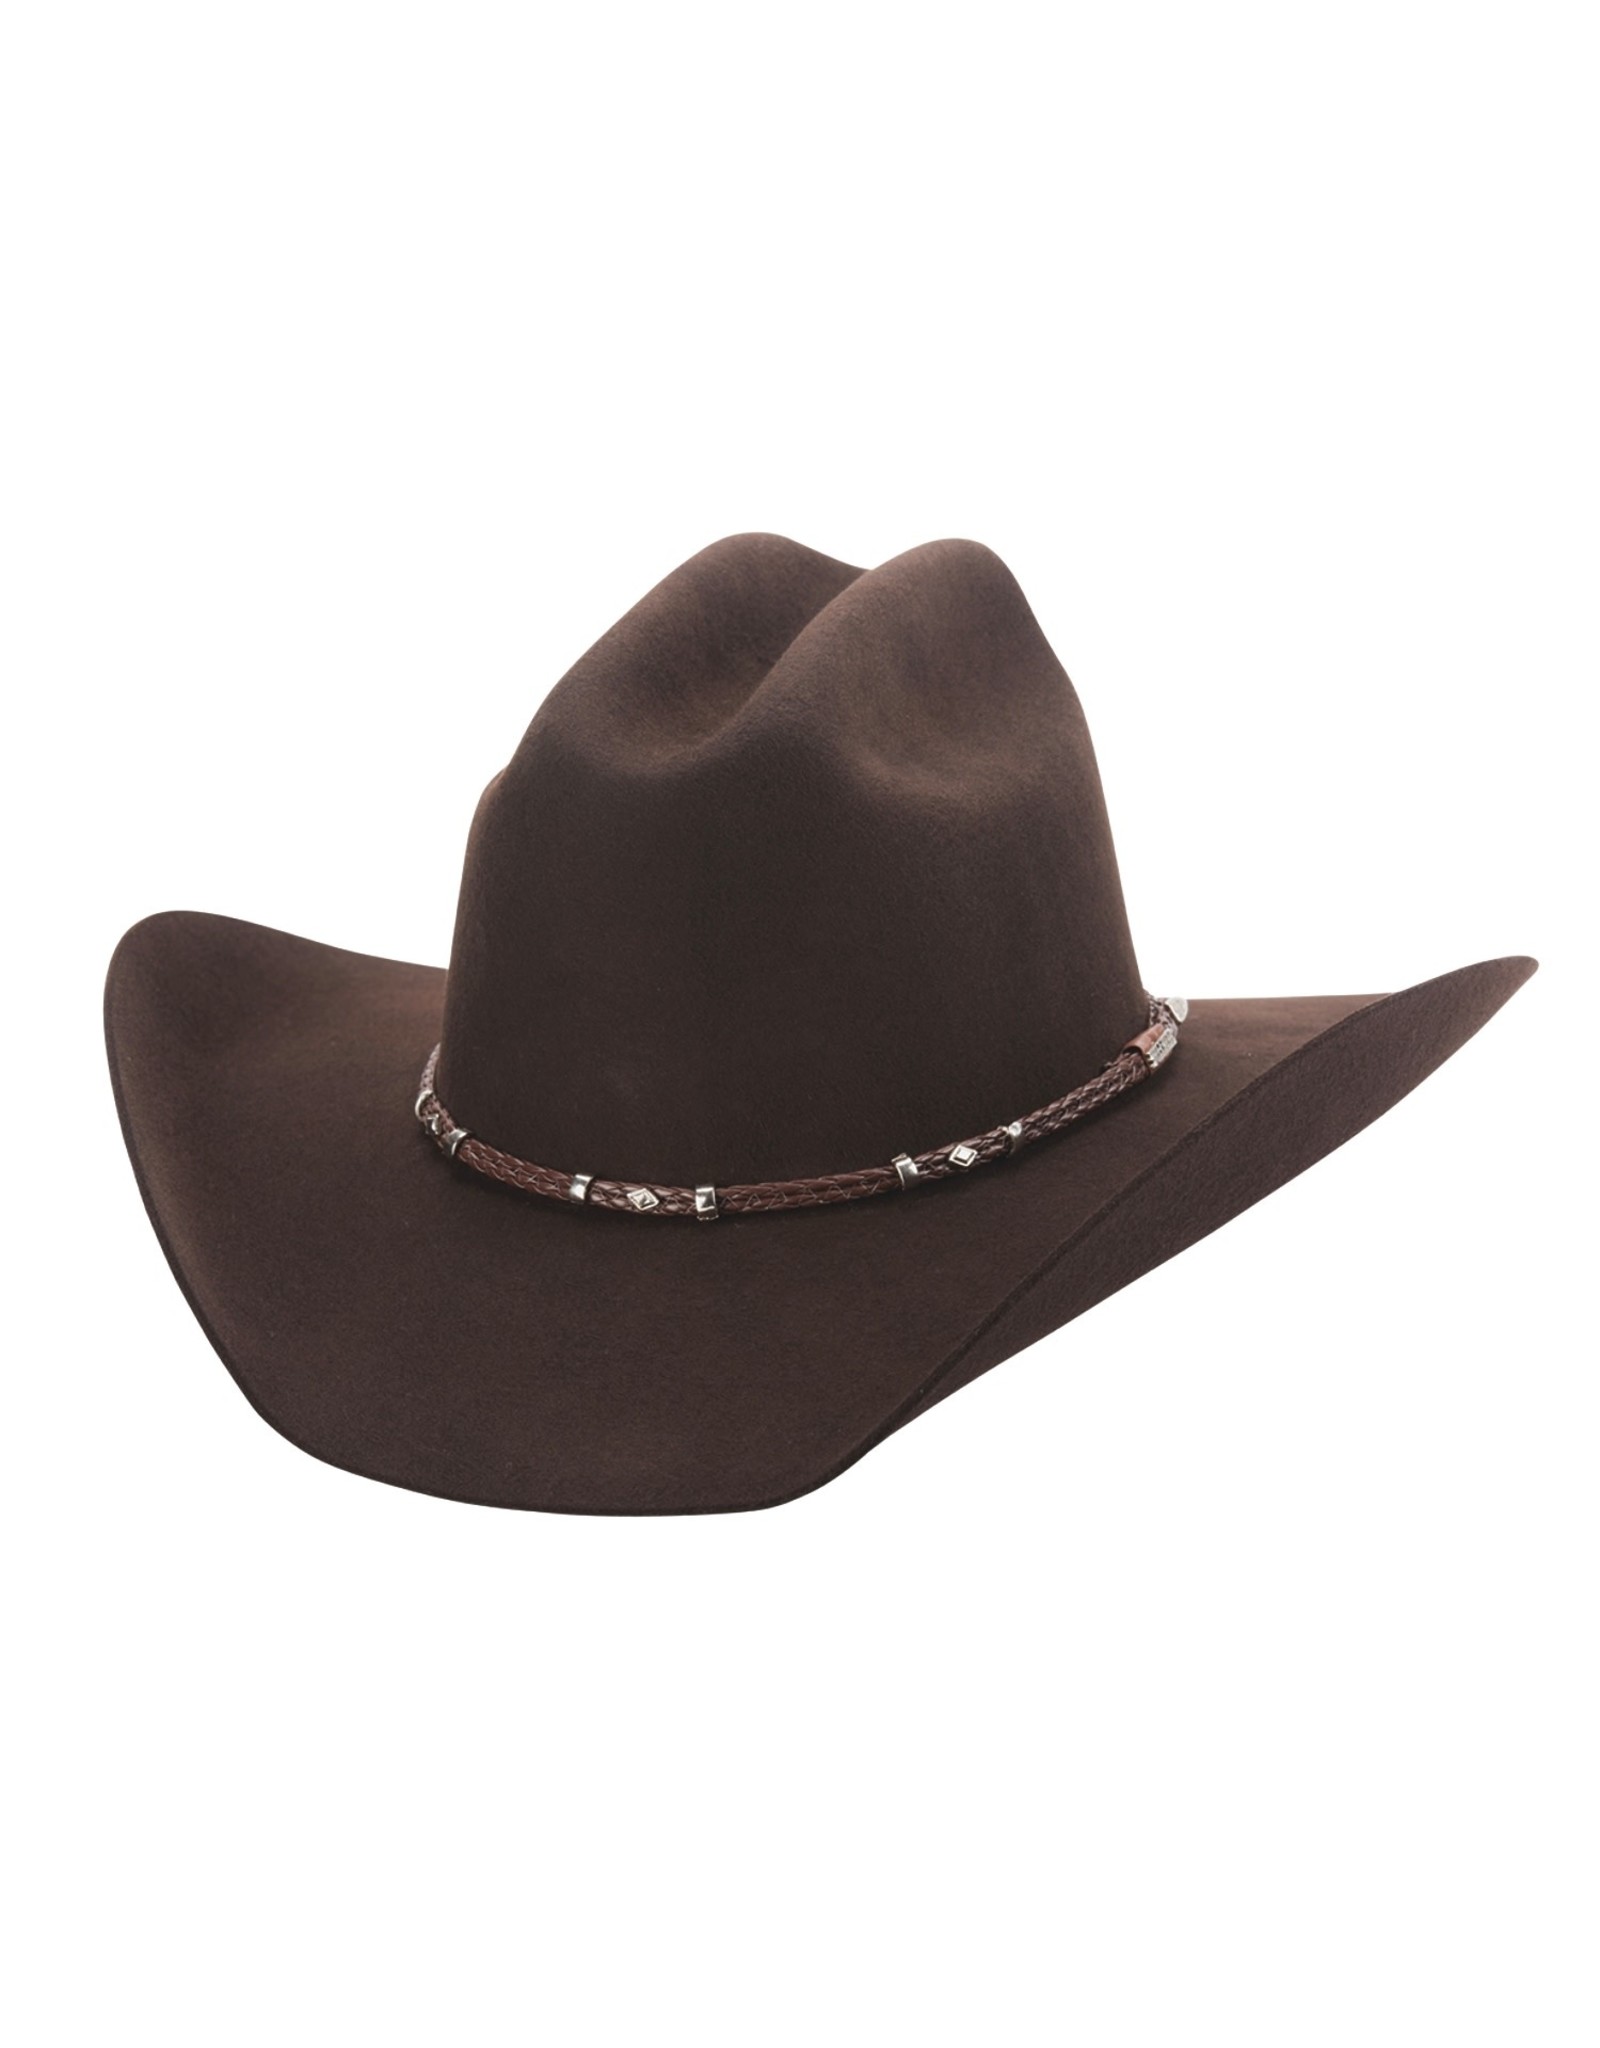 Bullhide Gholson 4X 0805CH Felt Chocolate Cowboy Hat